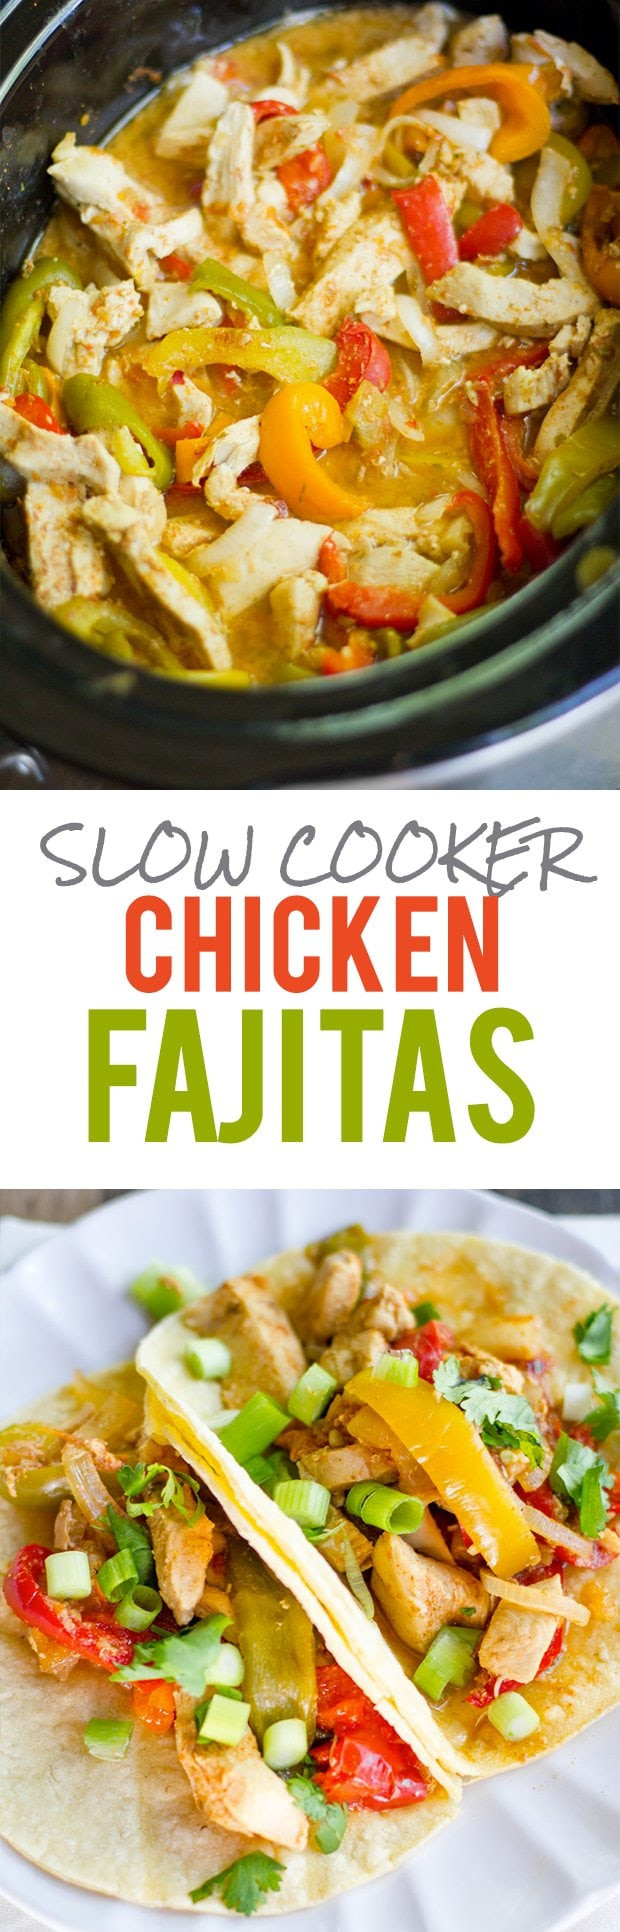 Slow Cooker Fajitas
 Slow Cooker Chicken Fajitas